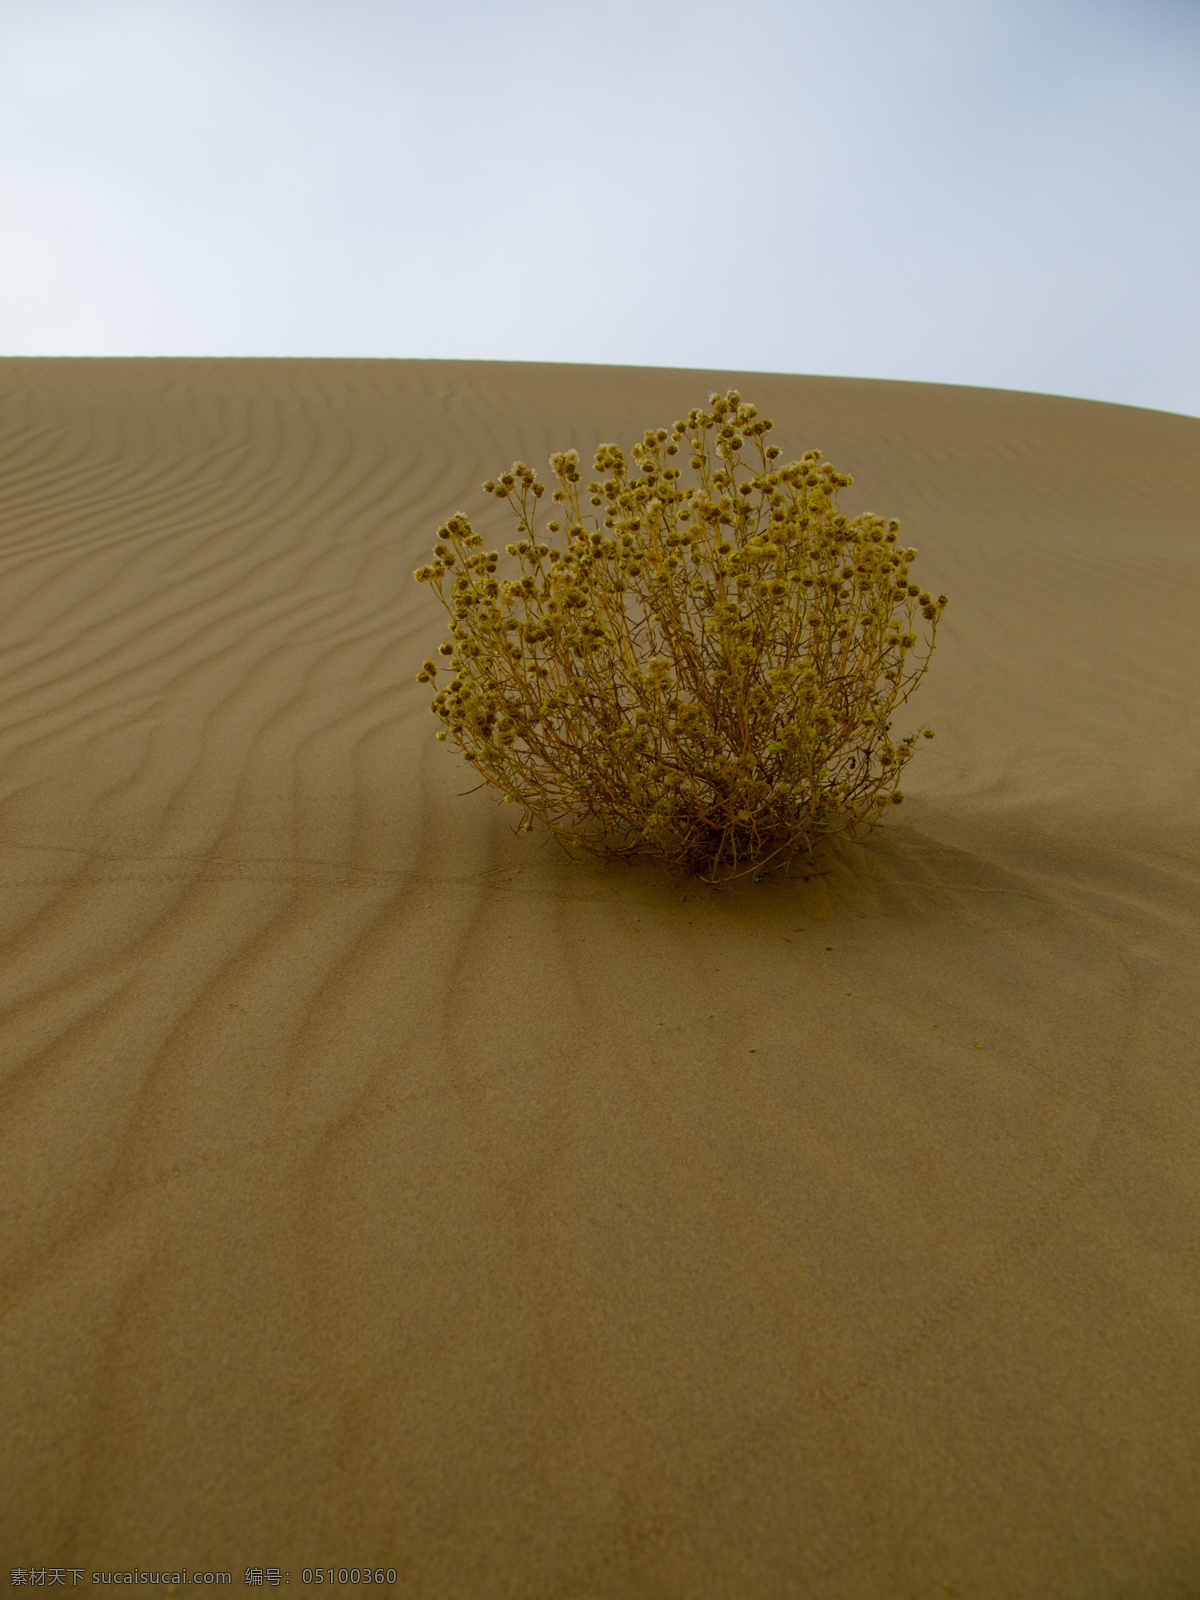 沙漠中的植物 沙漠 蓝天 响沙湾 内蒙古 库布其 库布齐 鄂尔多斯 枯枝 枯萎 植物 绿色 沙漠摄影 自然风景 自然景观